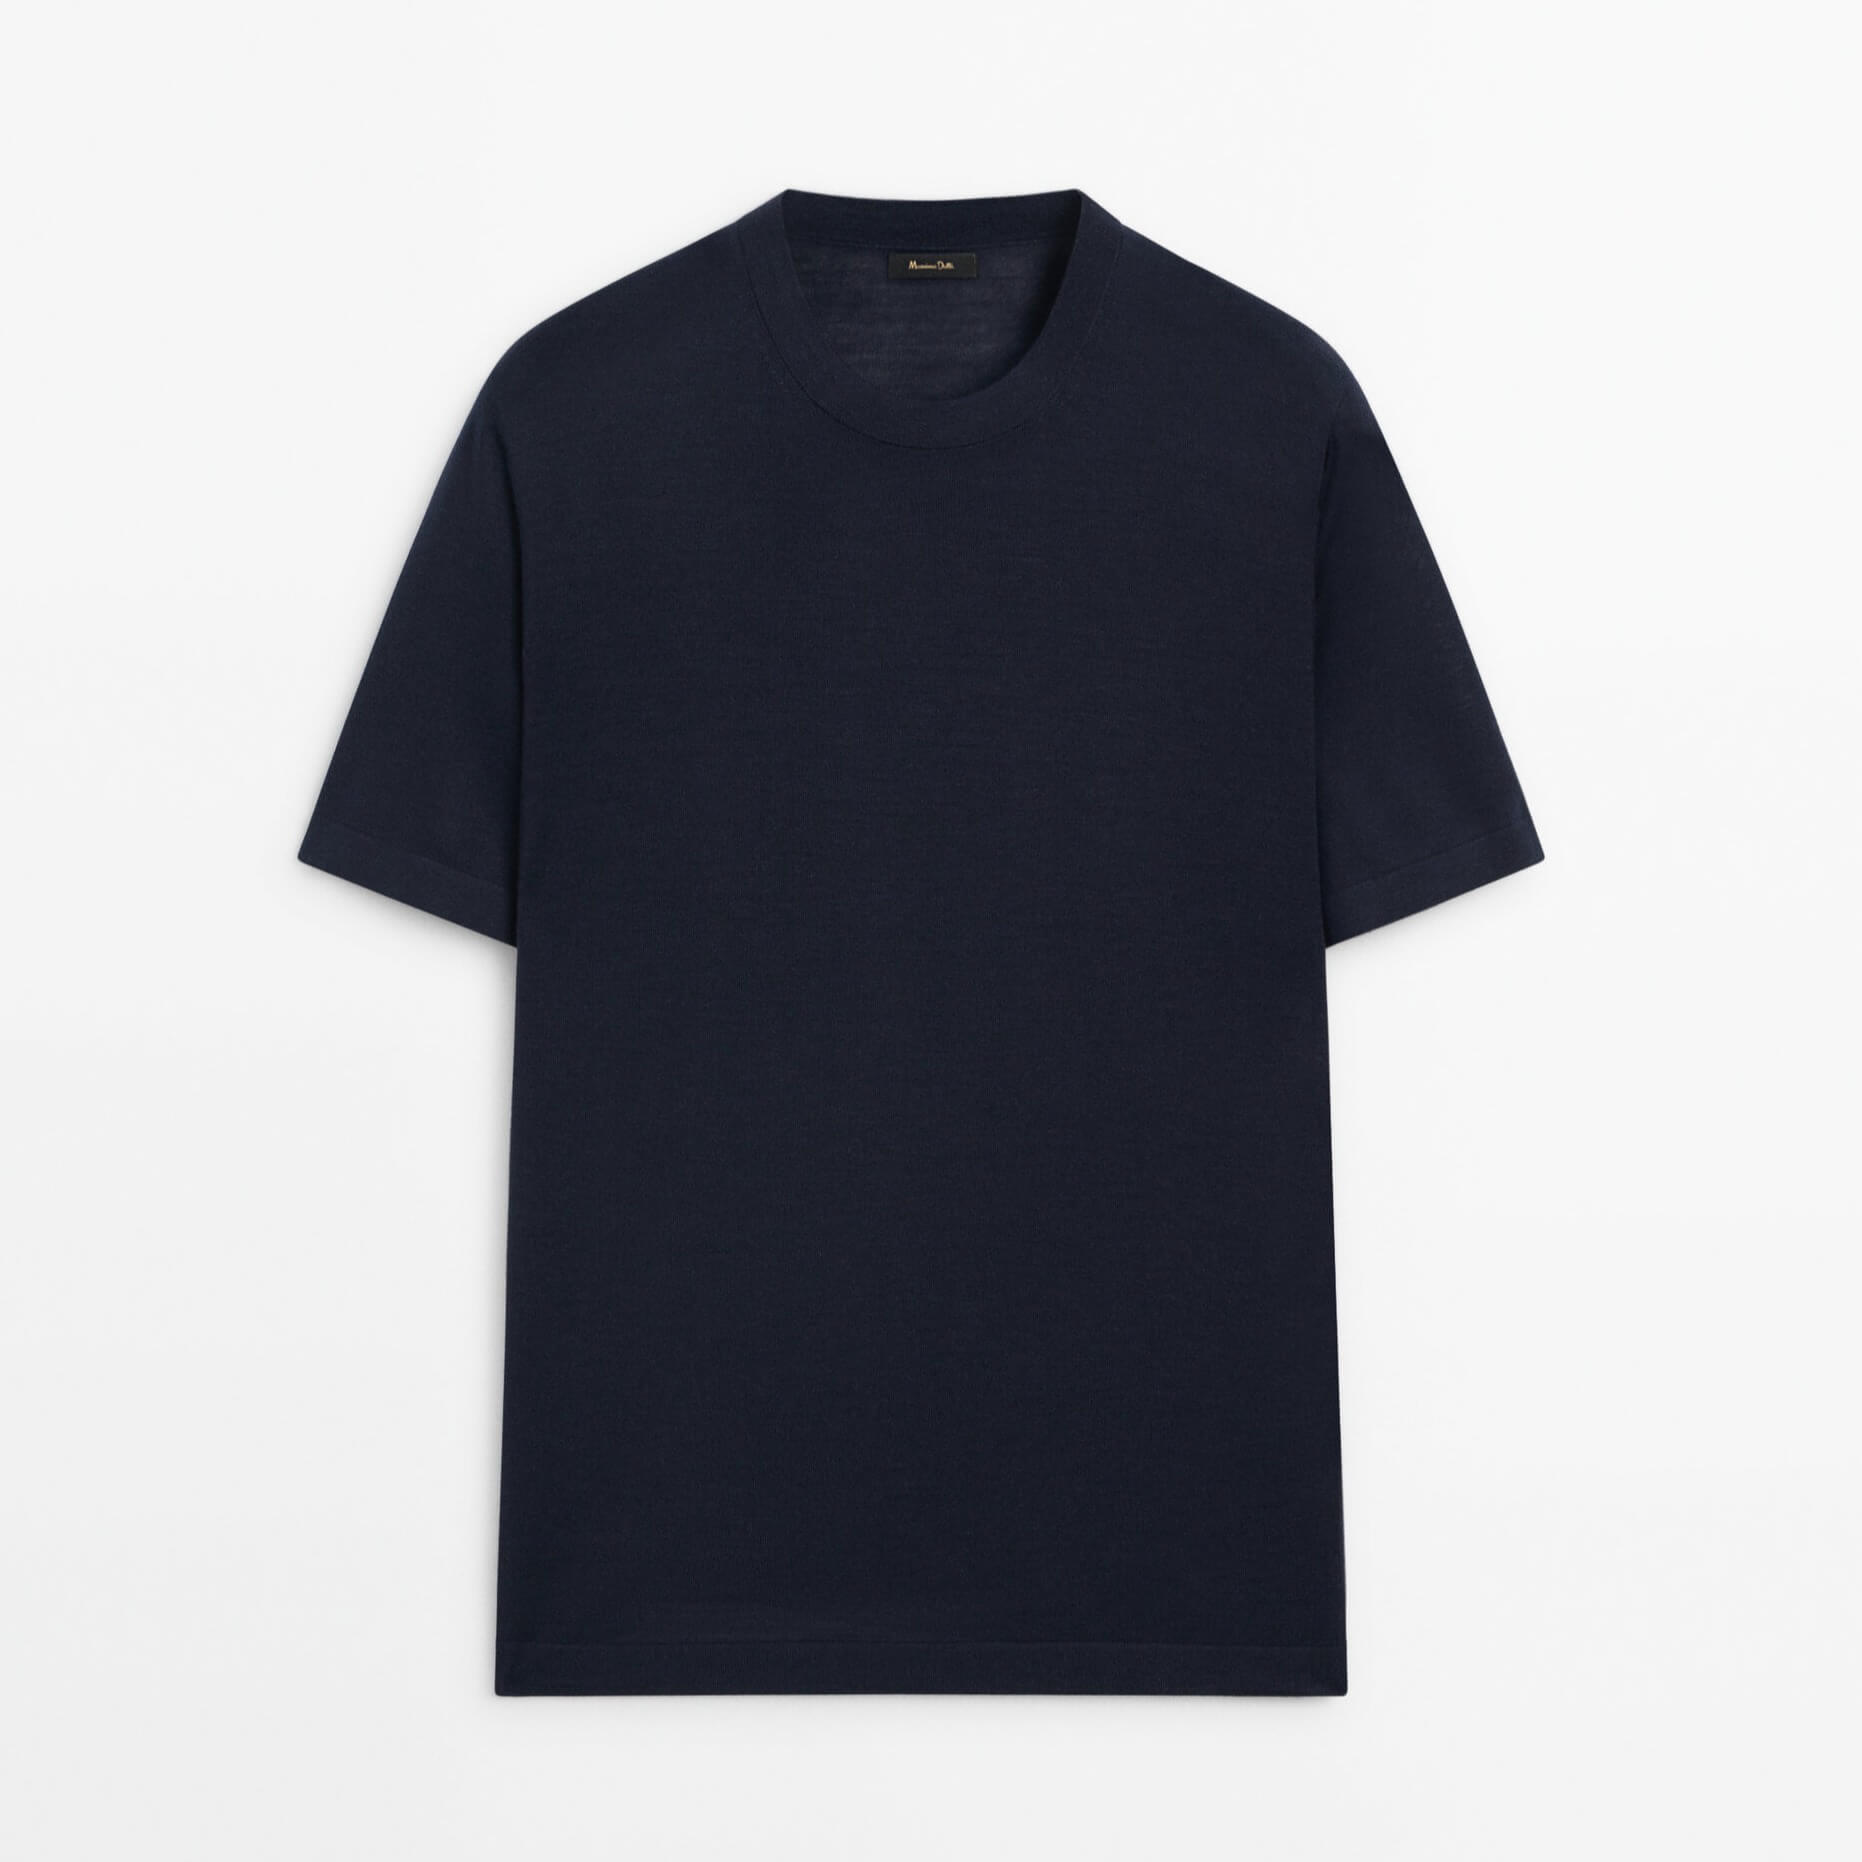 Футболка Massimo Dutti Short Sleeve Wool Blend, темно-синий